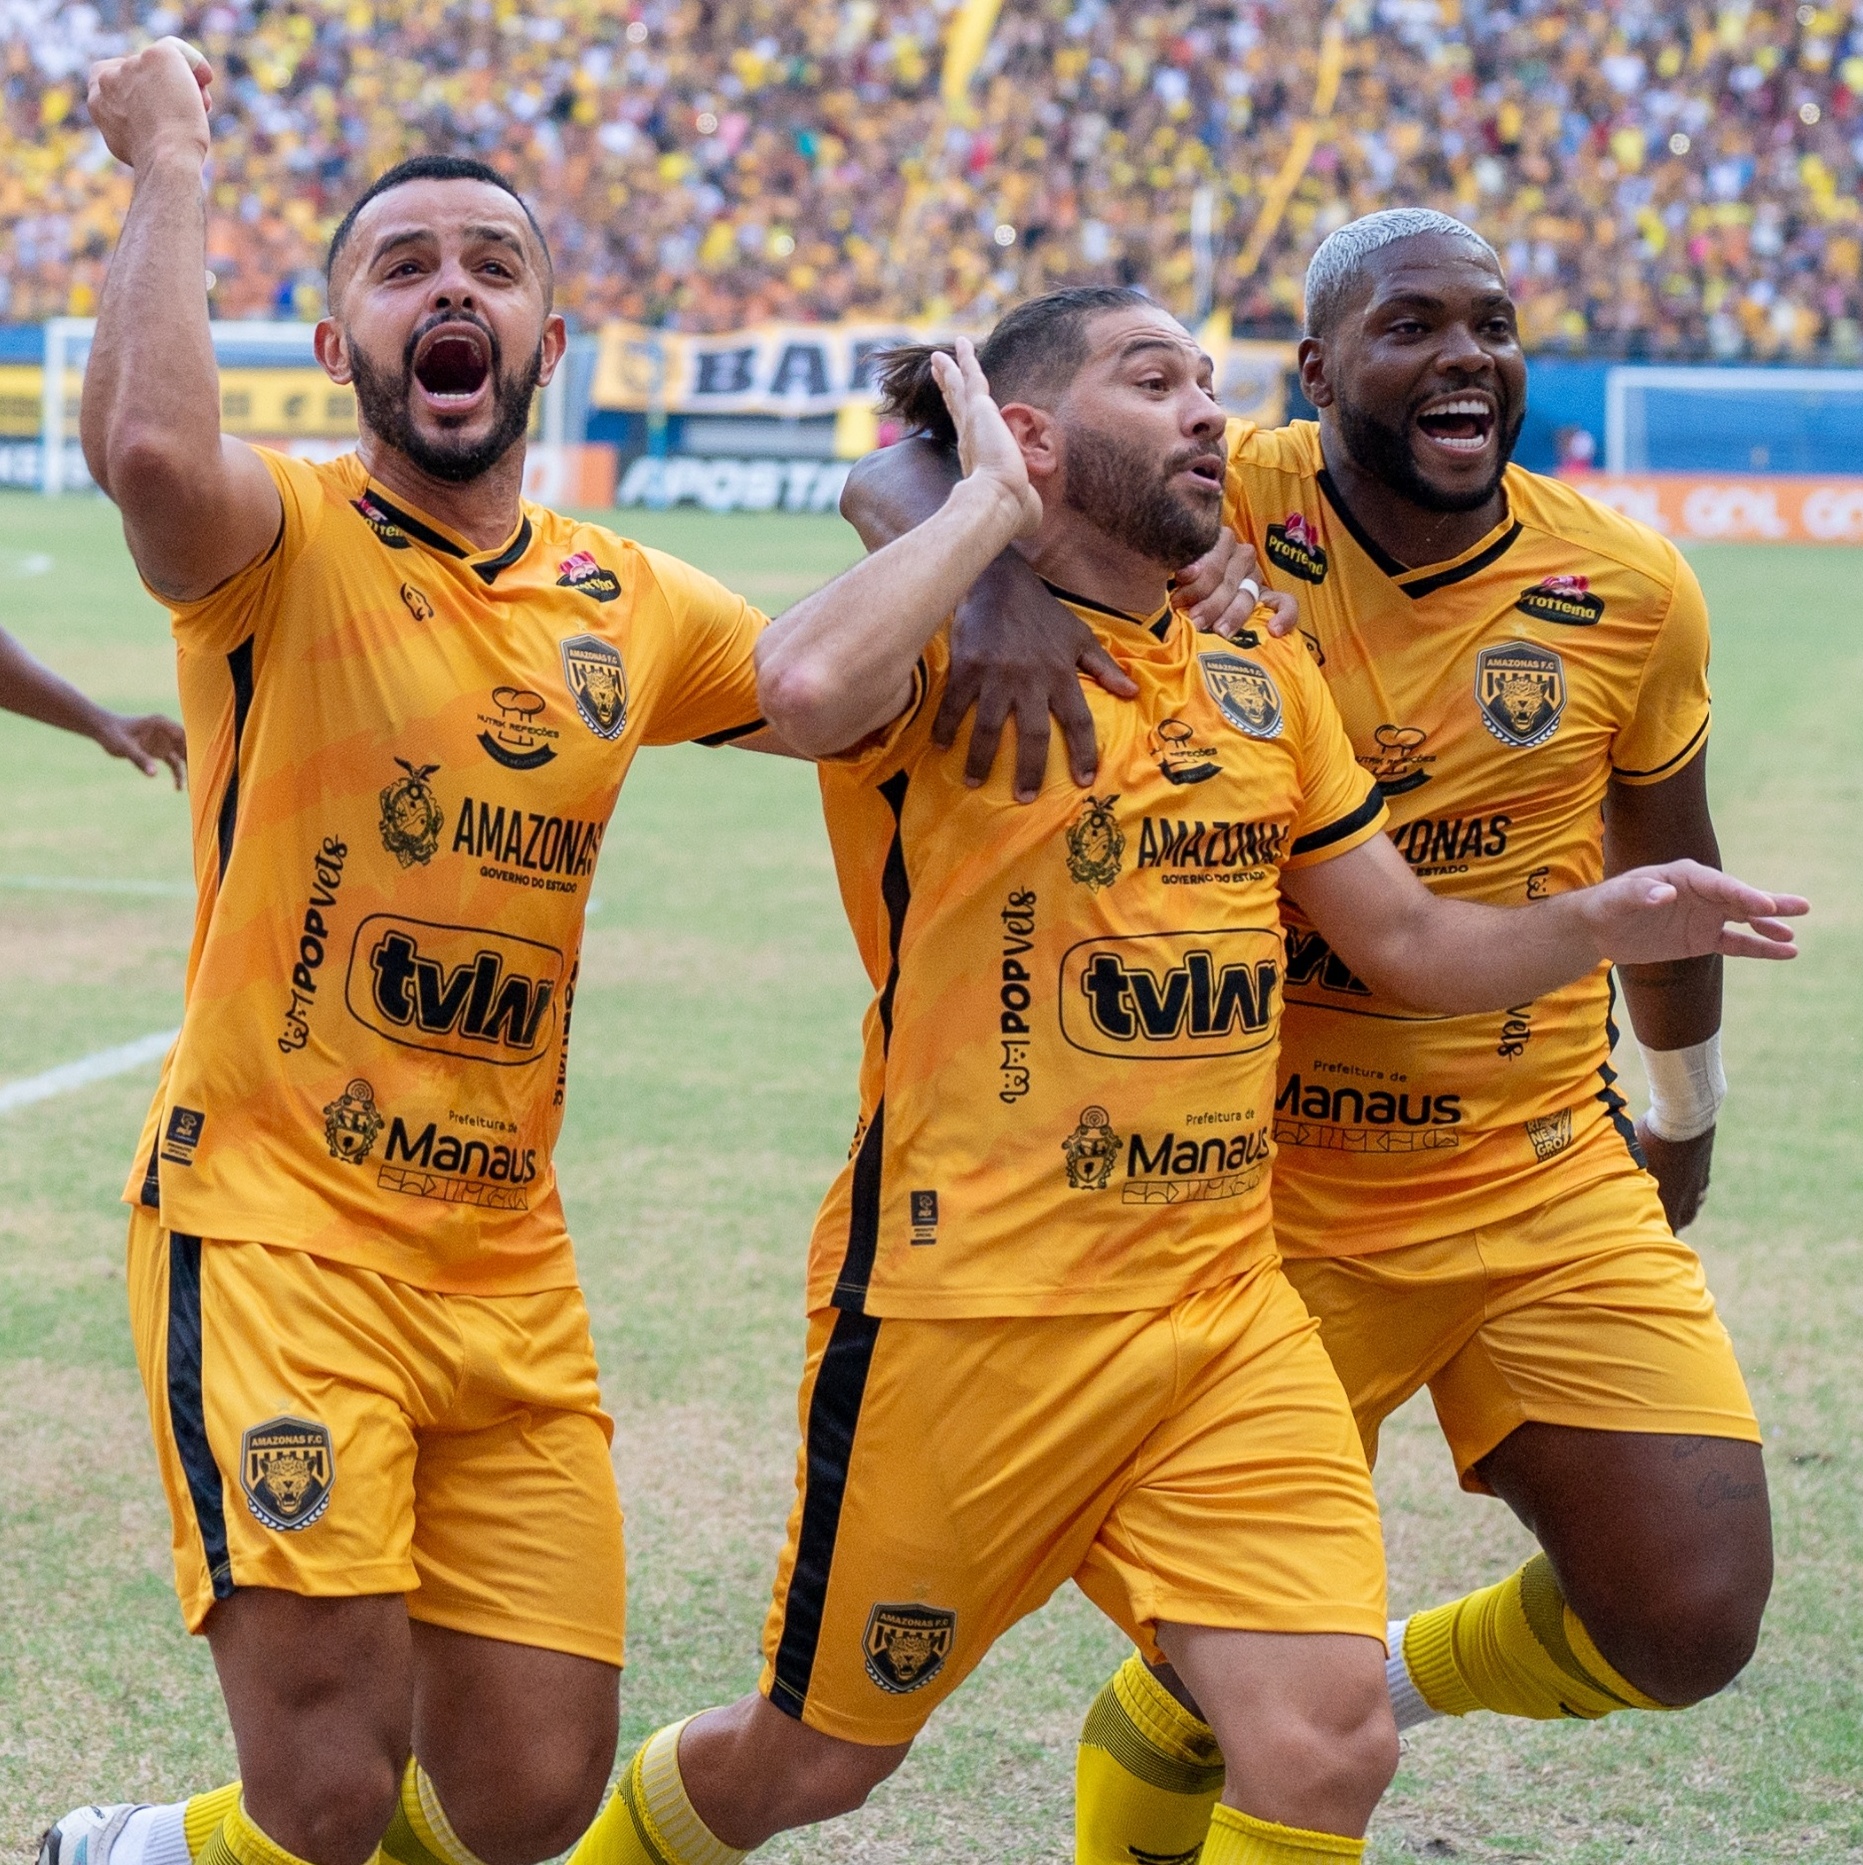 CBF detalha mais cinco jogos do Coritiba na Série A - Esportes